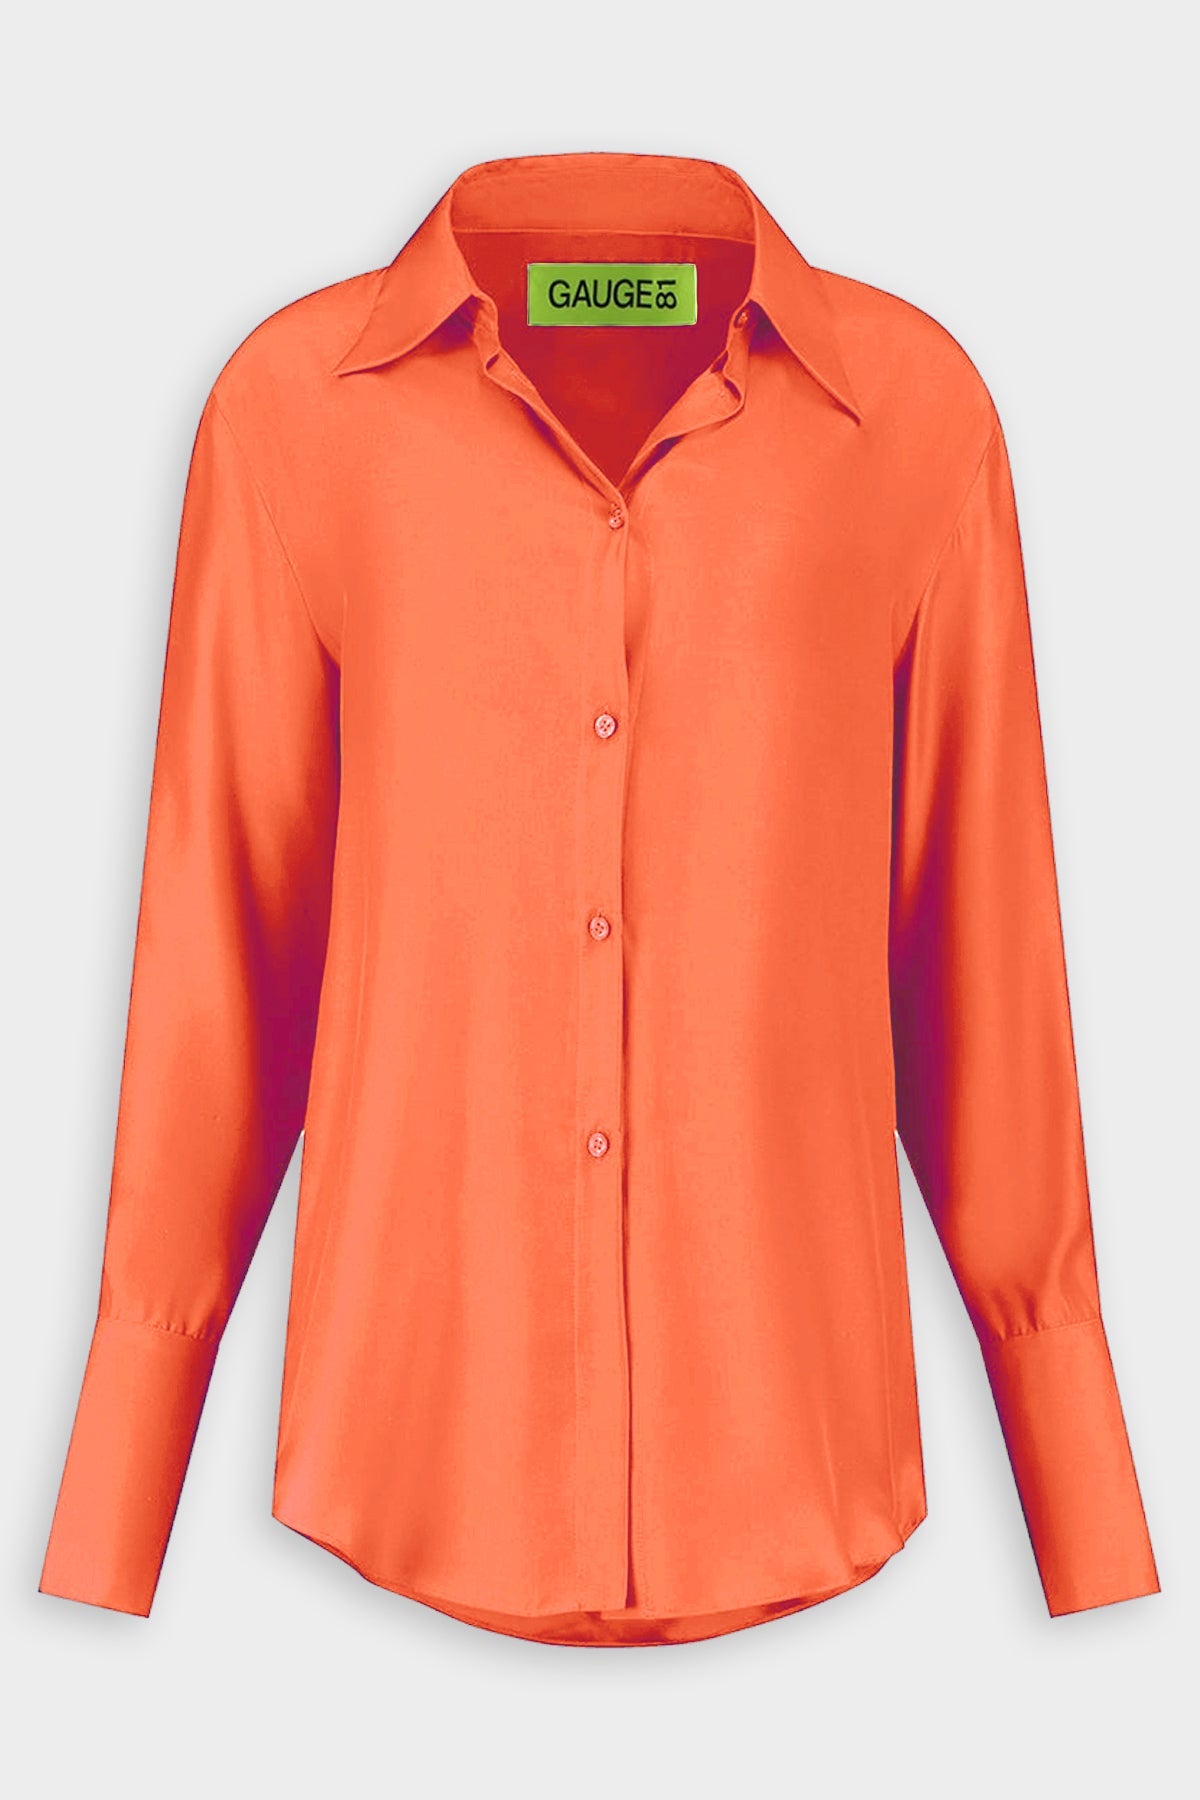 Okayi Over-Sized Button-Down Shirt in Mandarin - shop-olivia.com